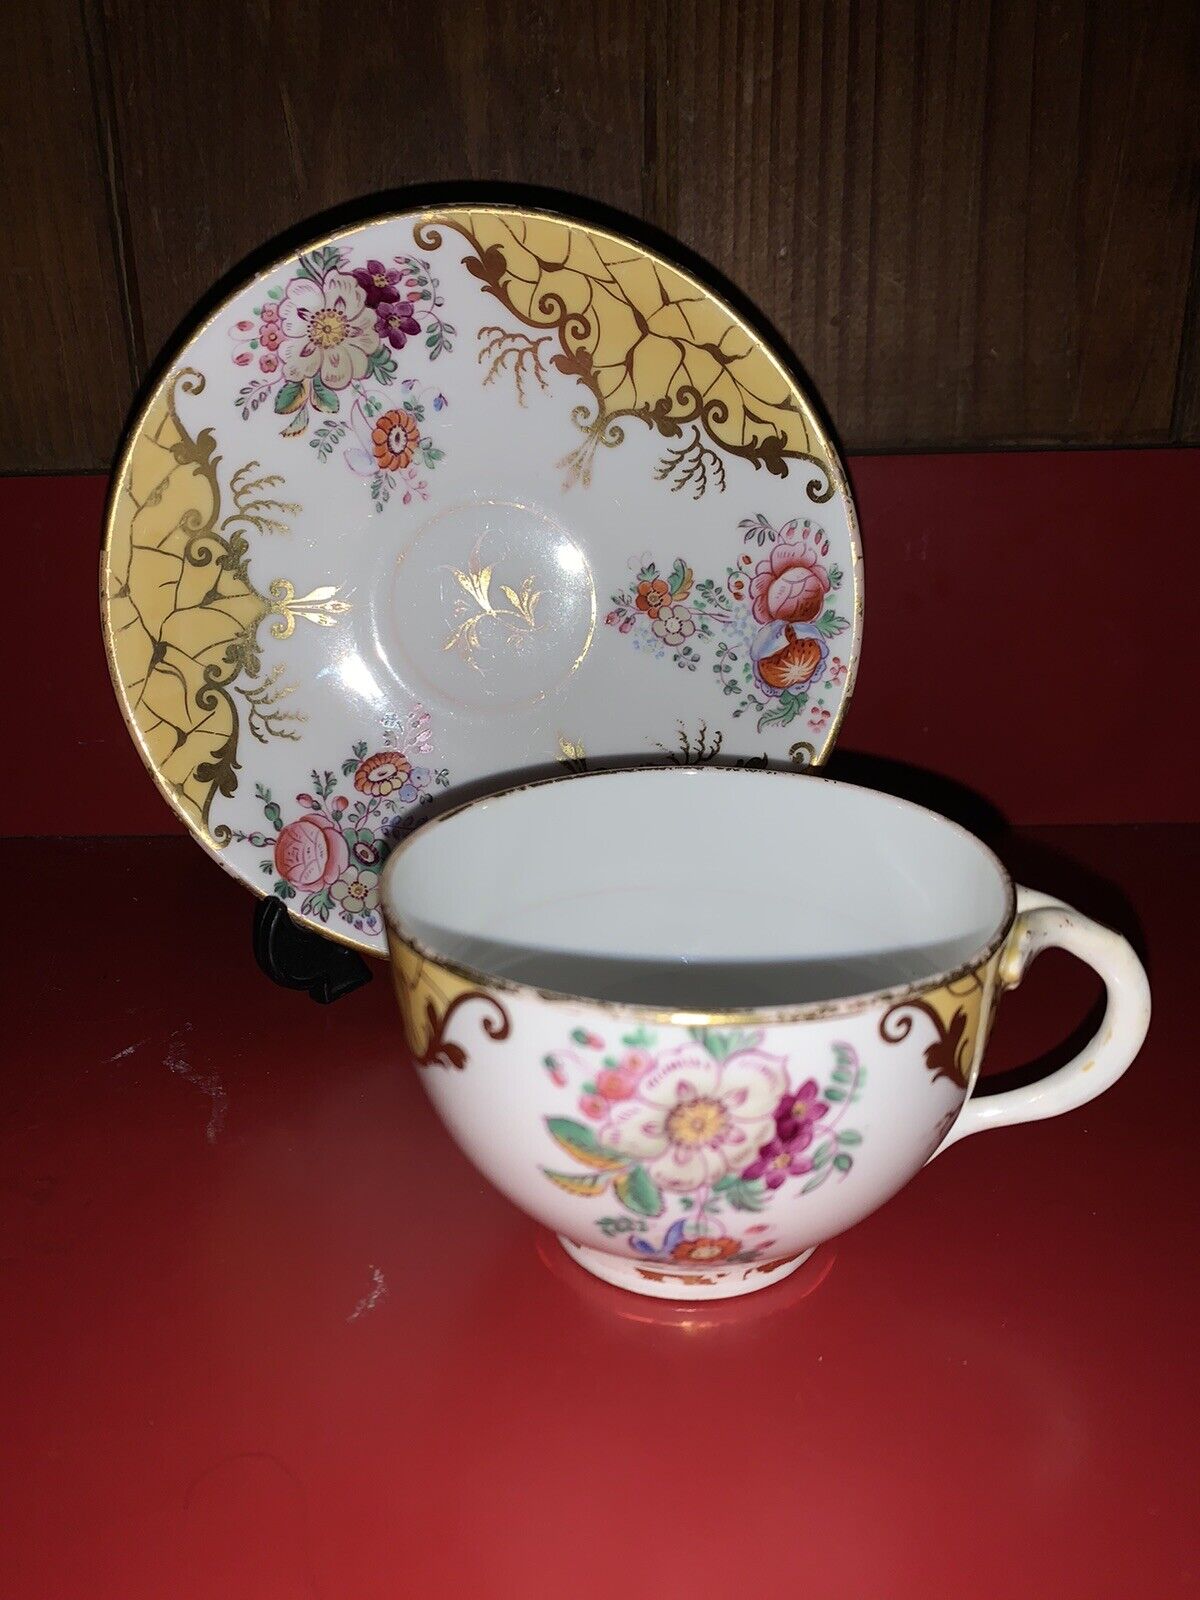 Antique Hand Painted Porcelain Teacup & Saucer Set